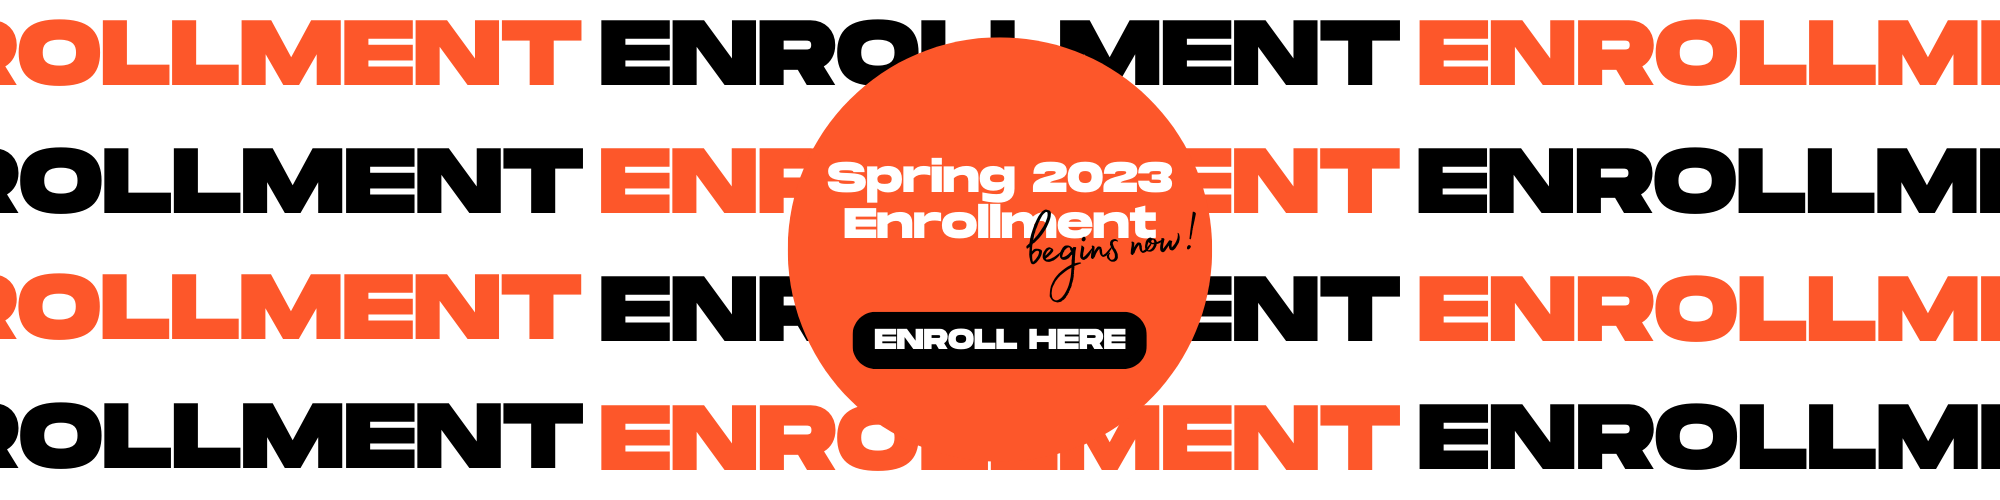 Spring Enrollment 